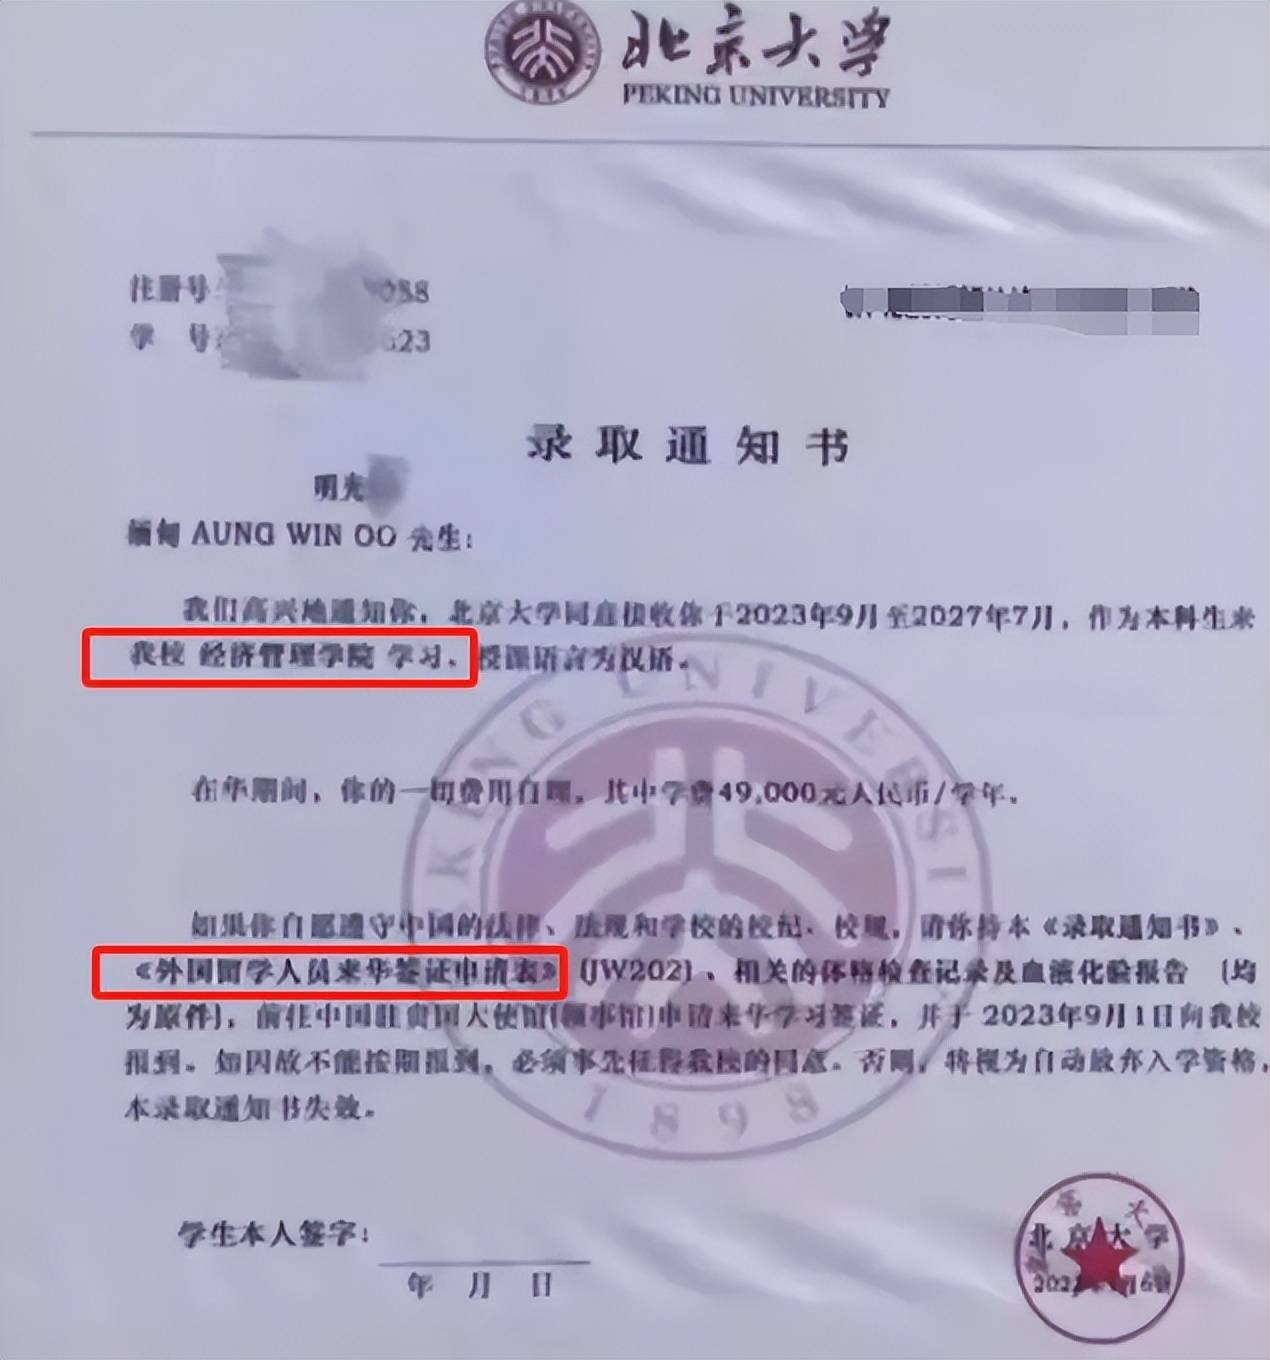 明光忠獲北京大學取錄的通知書